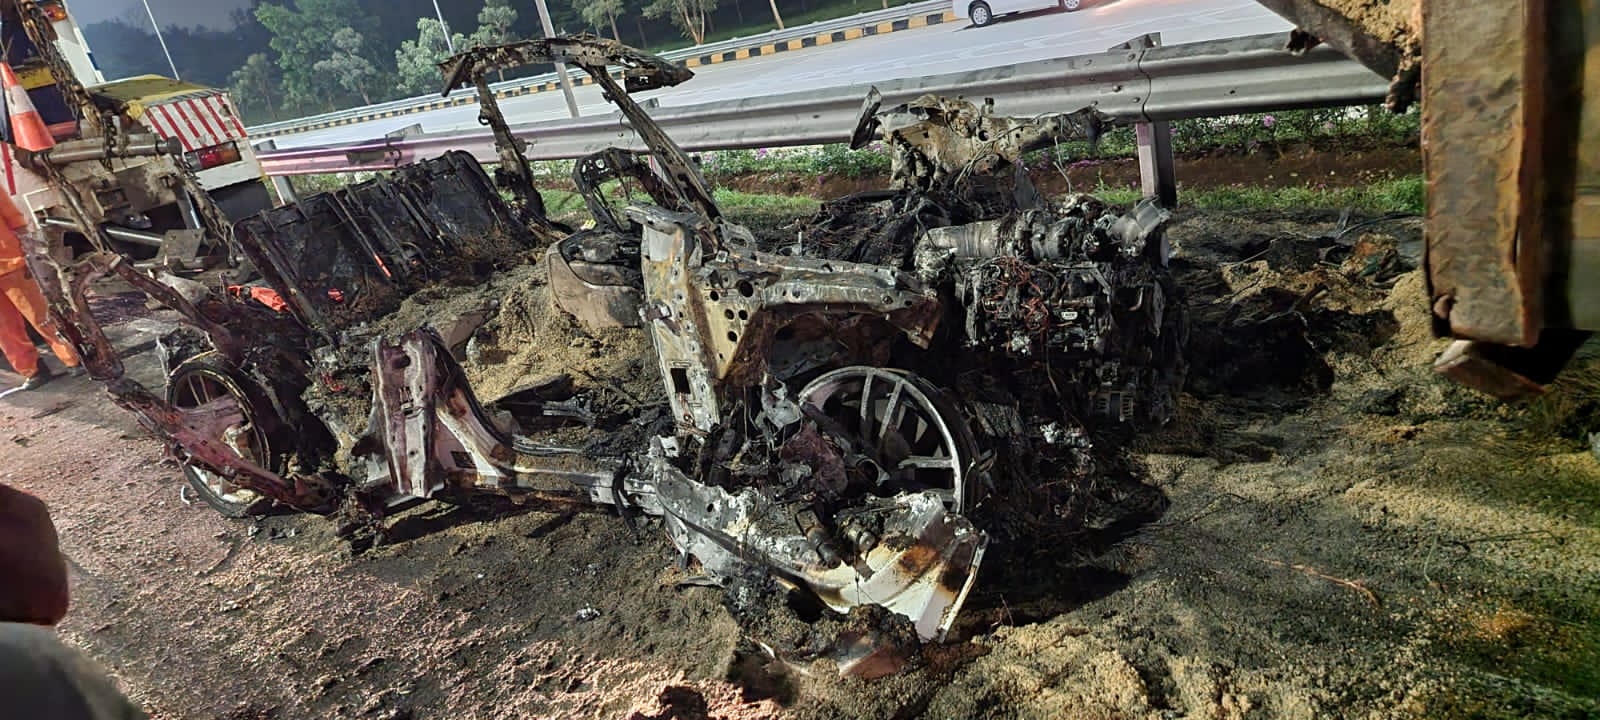 Mobil Mewah Porshe Tabrakan Truk Terbakar di Tol Jagorawi